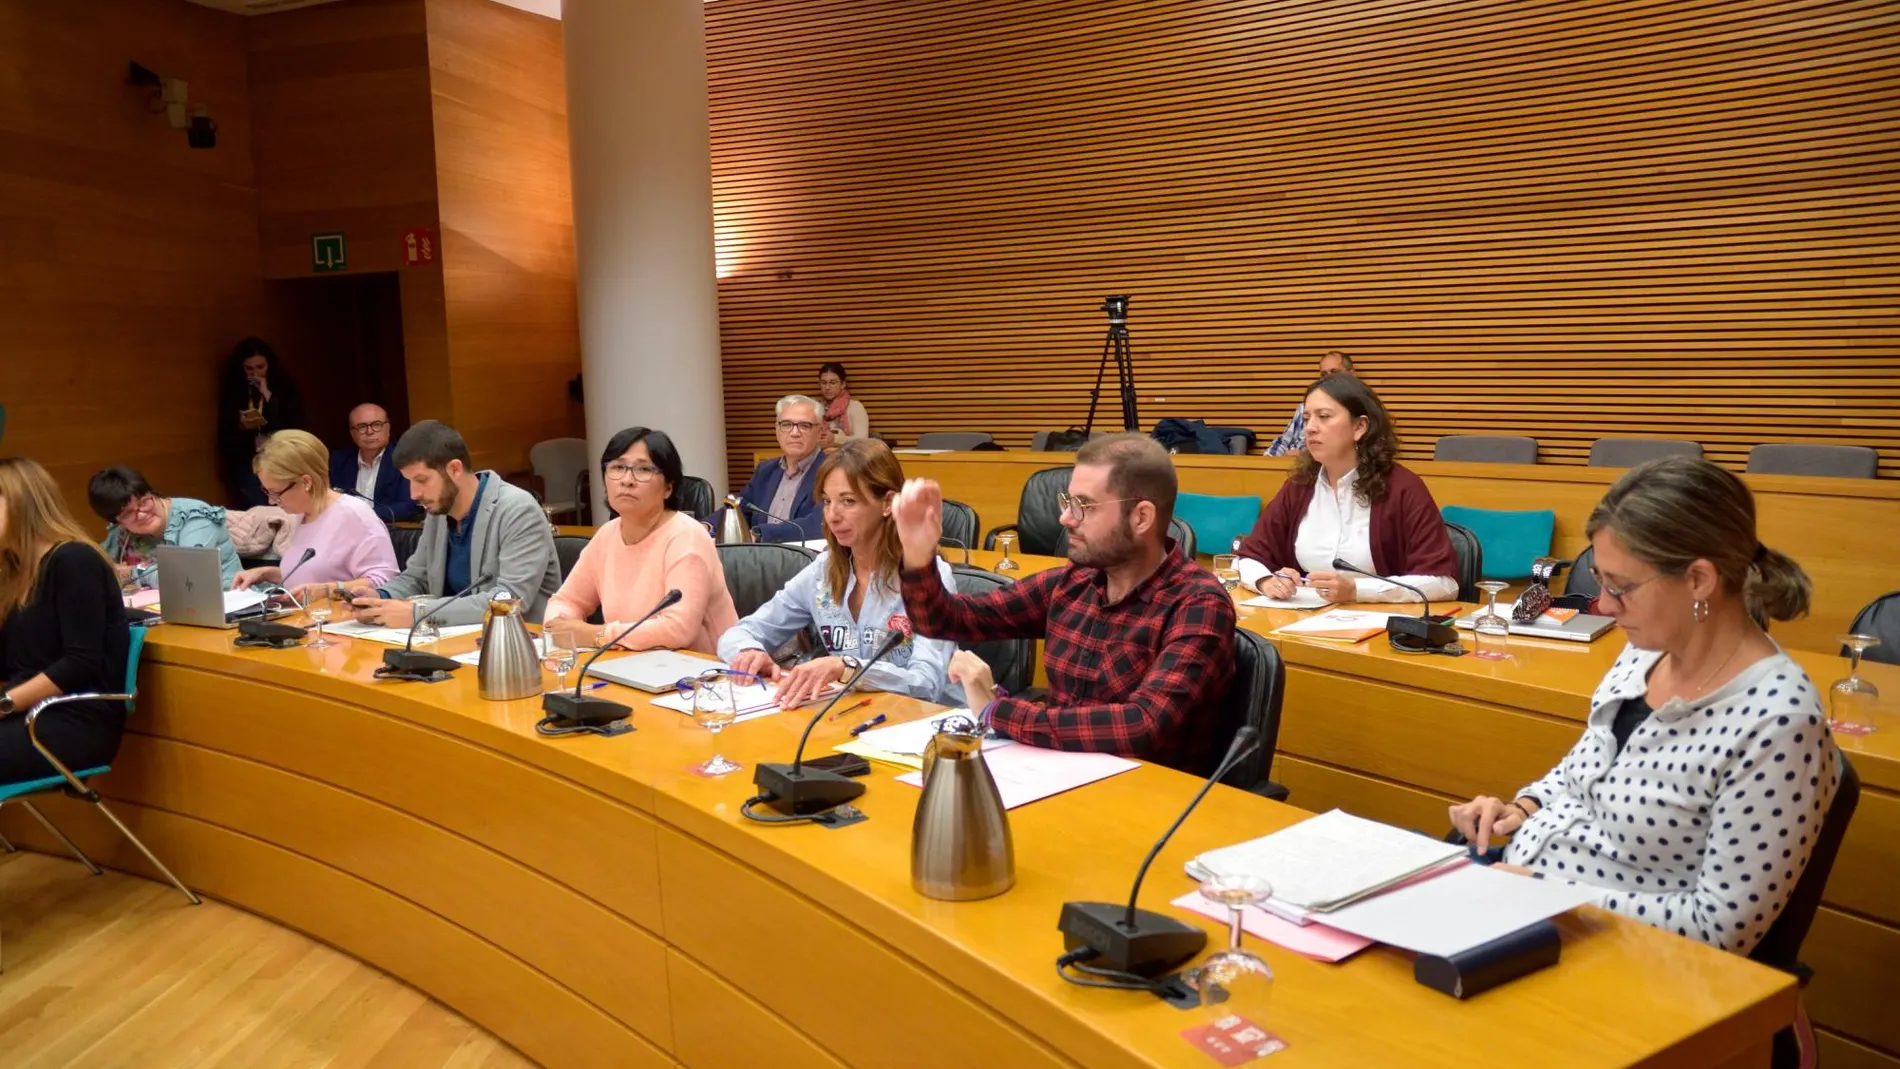 El diputado Salmerón corrige la PNL de Podemos ante la atenta mirada de la diputada Gómez (cuarta por la derecha)